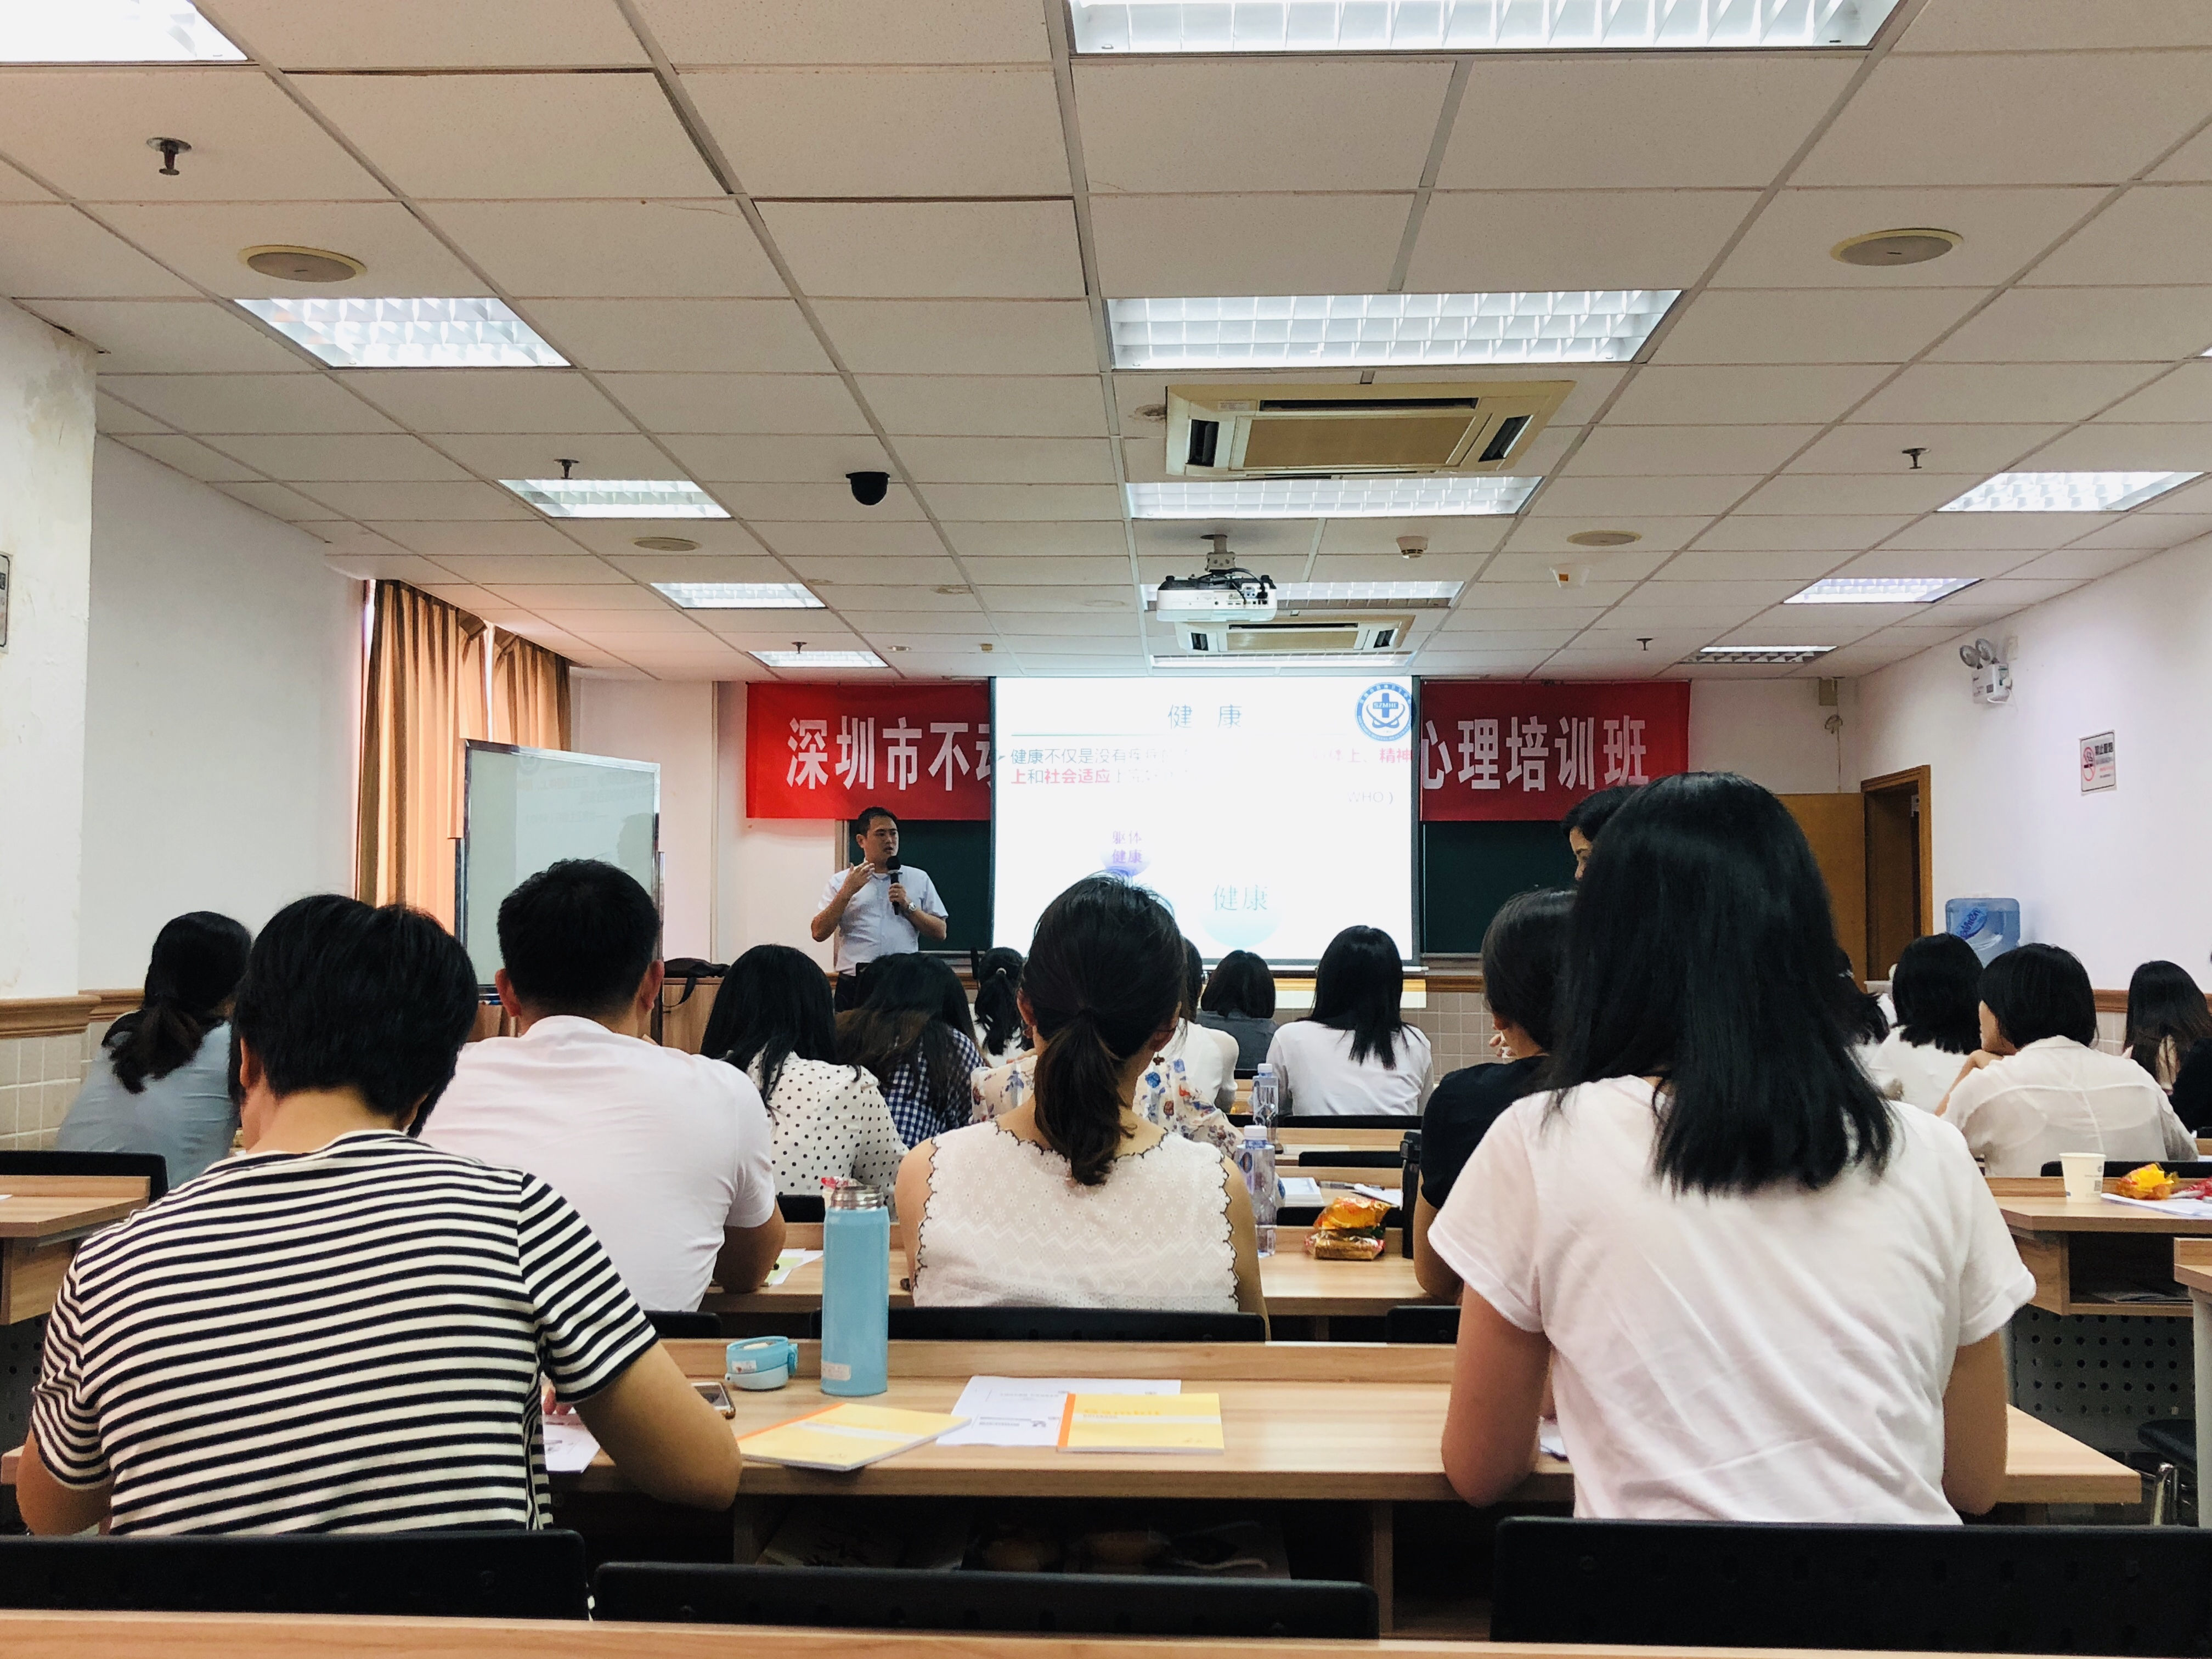 深圳市不动产登记中心2019年心理培训班第一期学员现场